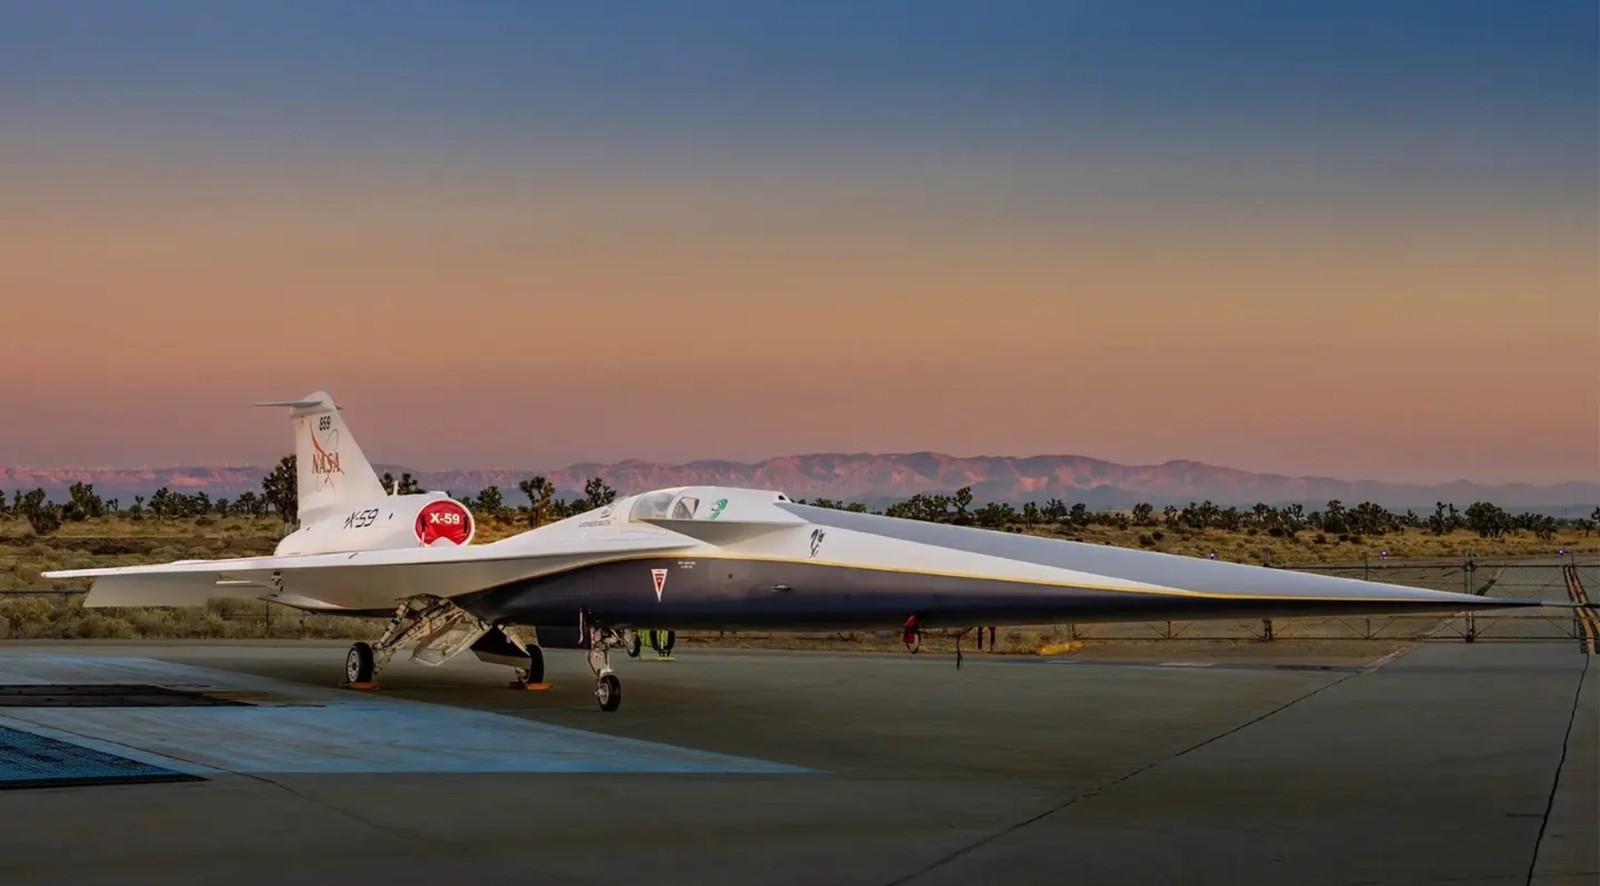 Ten samolot ma zrewolucjonizować lotnictwo. Co wyjątkowego jest w X-59?